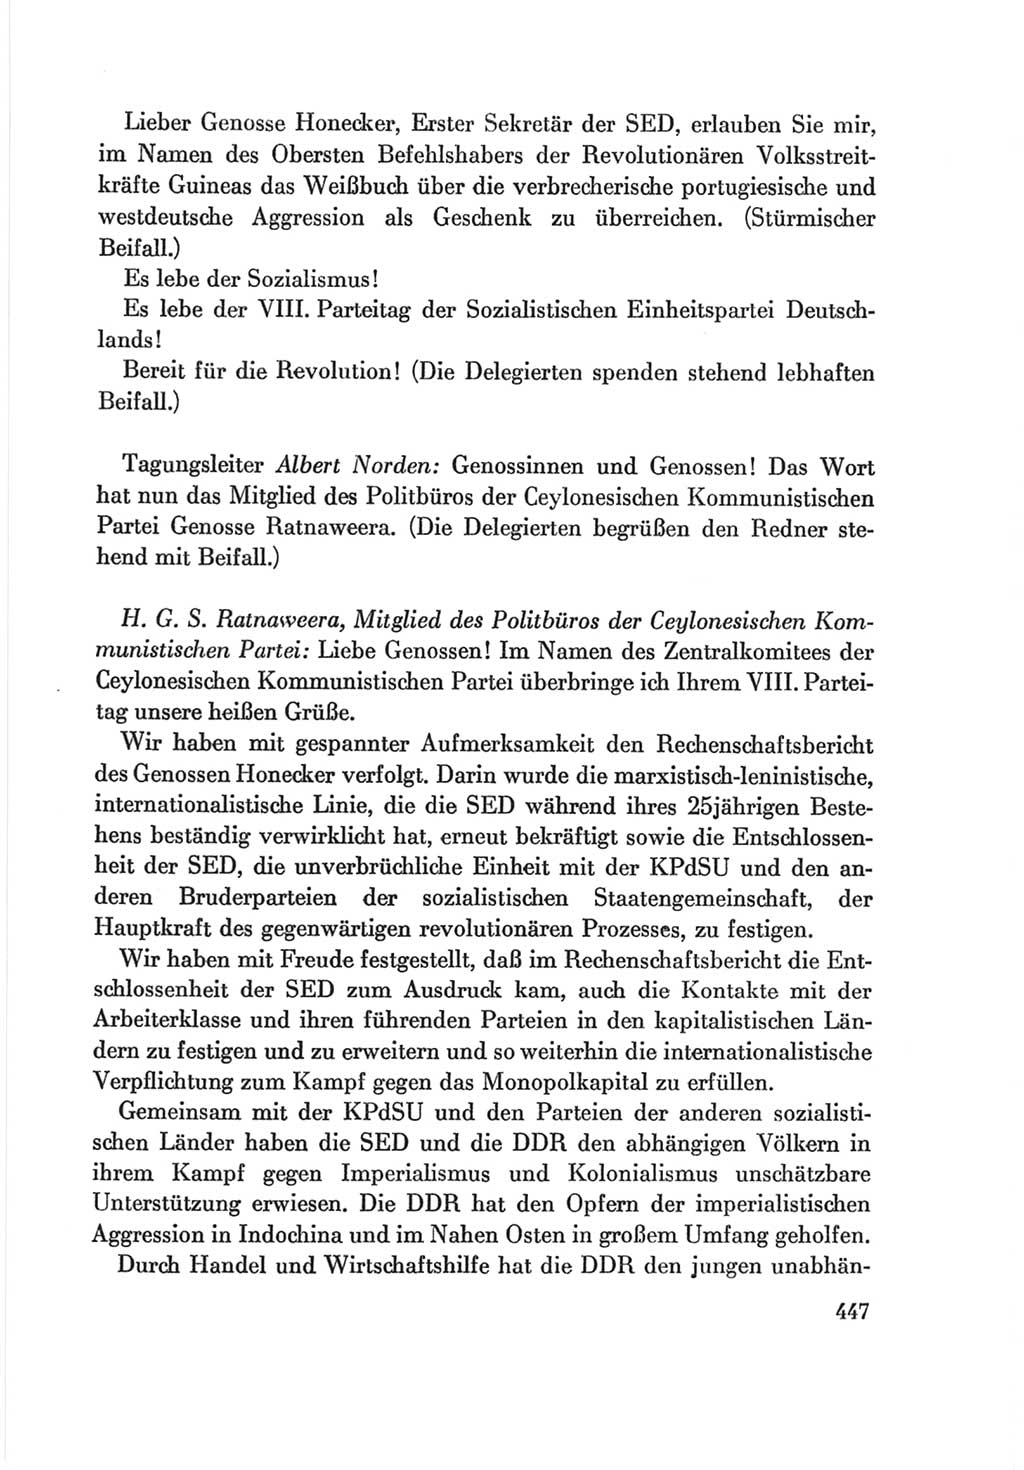 Protokoll der Verhandlungen des Ⅷ. Parteitages der Sozialistischen Einheitspartei Deutschlands (SED) [Deutsche Demokratische Republik (DDR)] 1971, Band 1, Seite 447 (Prot. Verh. Ⅷ. PT SED DDR 1971, Bd. 1, S. 447)